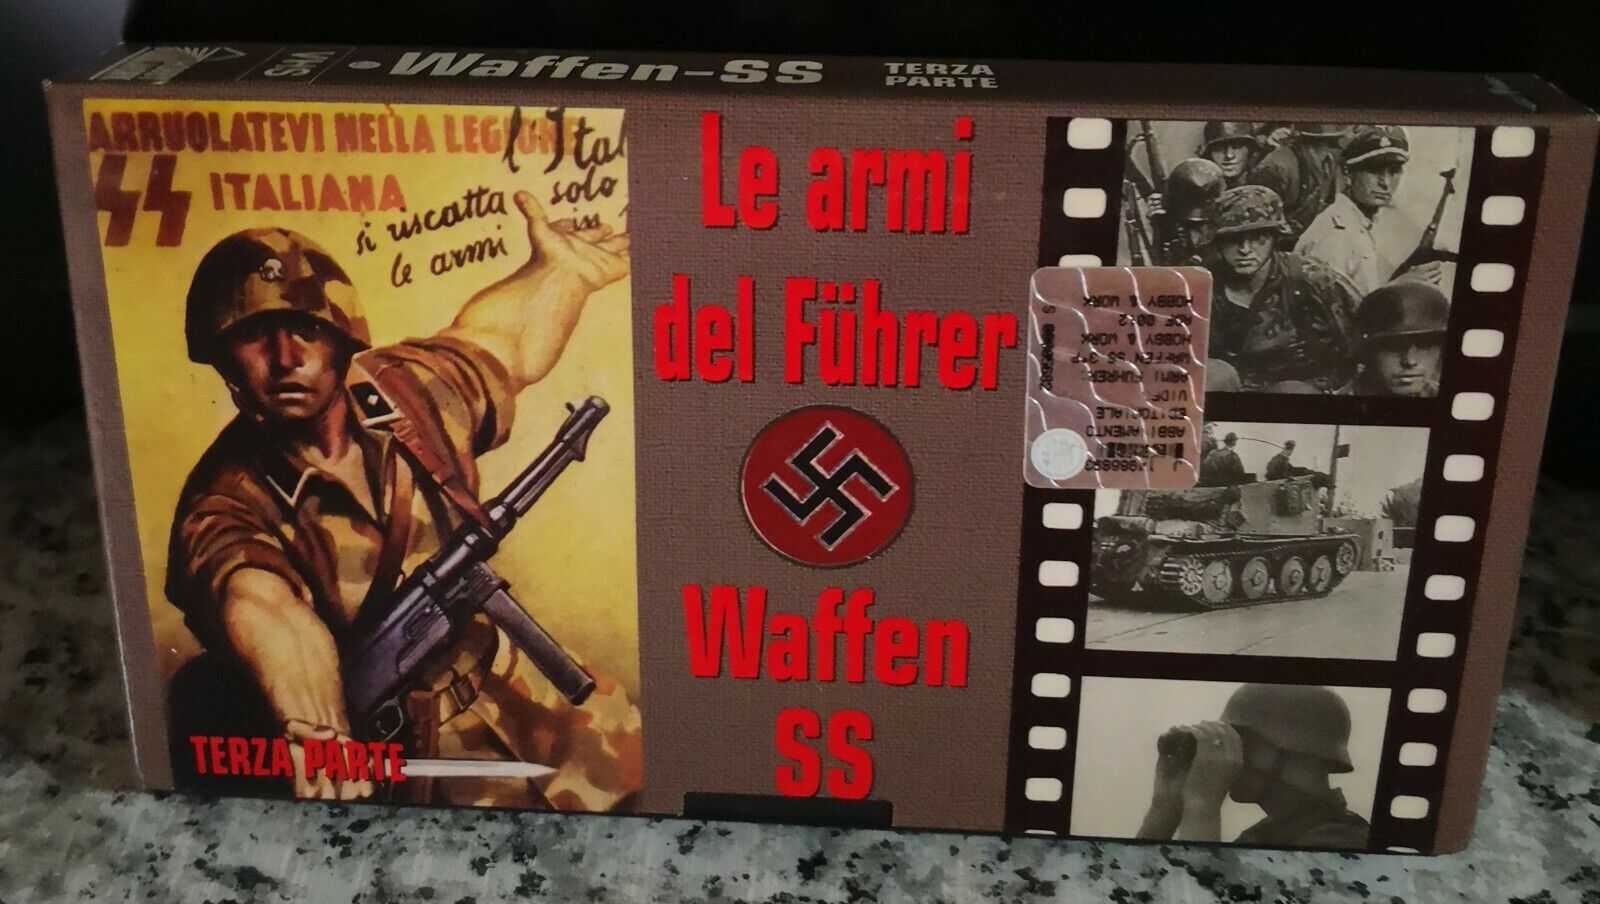 Le armi del Fuhrer , Waffen ss terza parte - 1999 - hobby e work - F